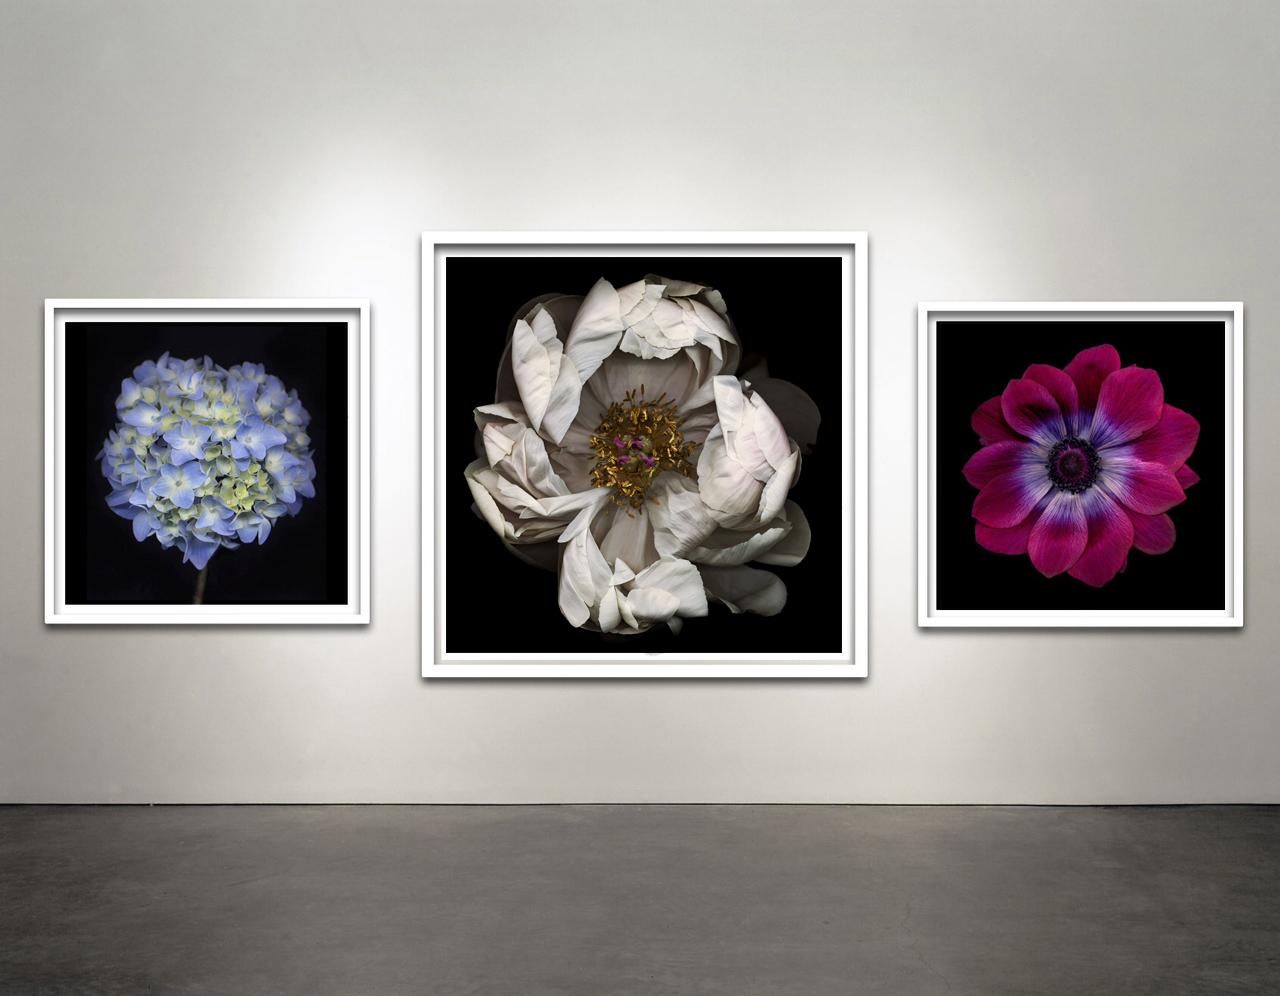 Untitled Number 30, Black Series (Zeitgenössische Fotografie einer weißen Blume auf schwarzem Hintergrund) von Chad Kleitsch
30 x 30 Zoll ungerahmt
Einrahmung verfügbar:  ca. 33 x 33 x 1,5 Zoll, gerahmt in weißem Metallrahmen

Alle Editionen werden